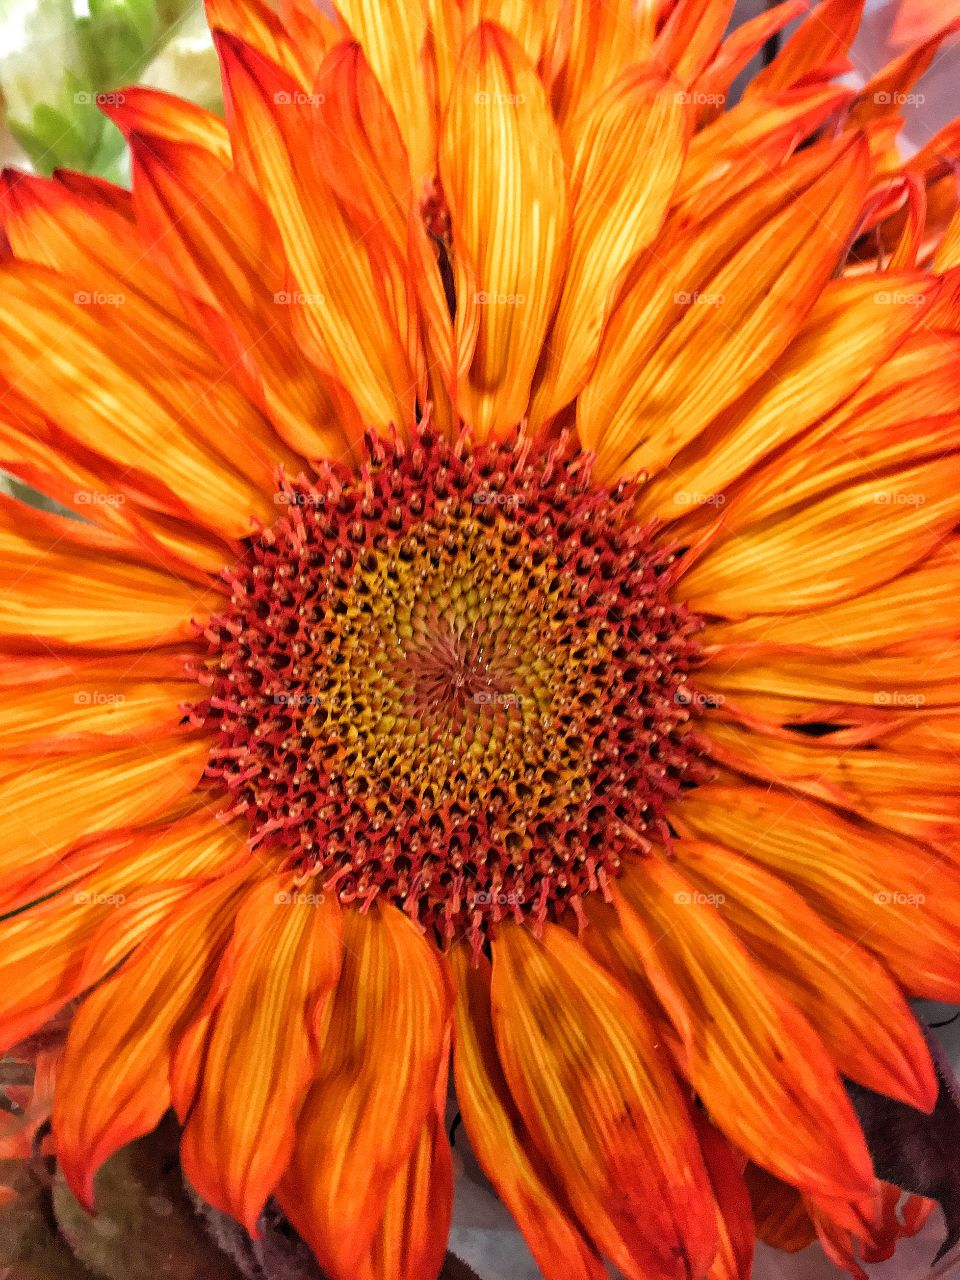 Orange sunflower 